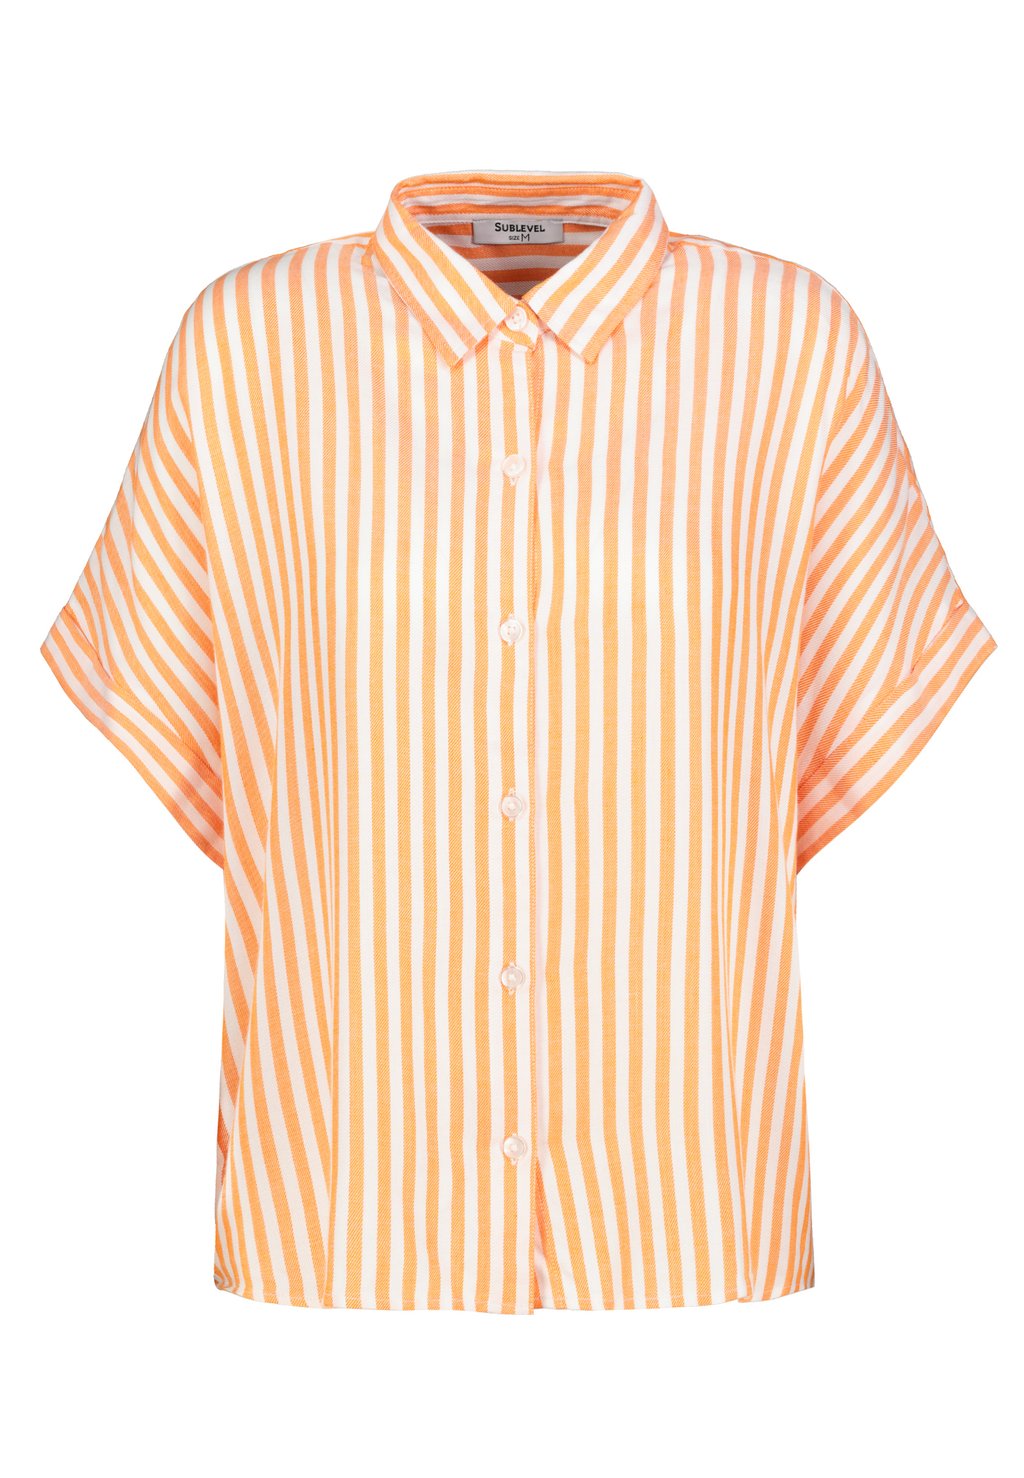 Блузка-рубашка KURZARM Sublevel, цвет orange блузка рубашка mustang цвет orange